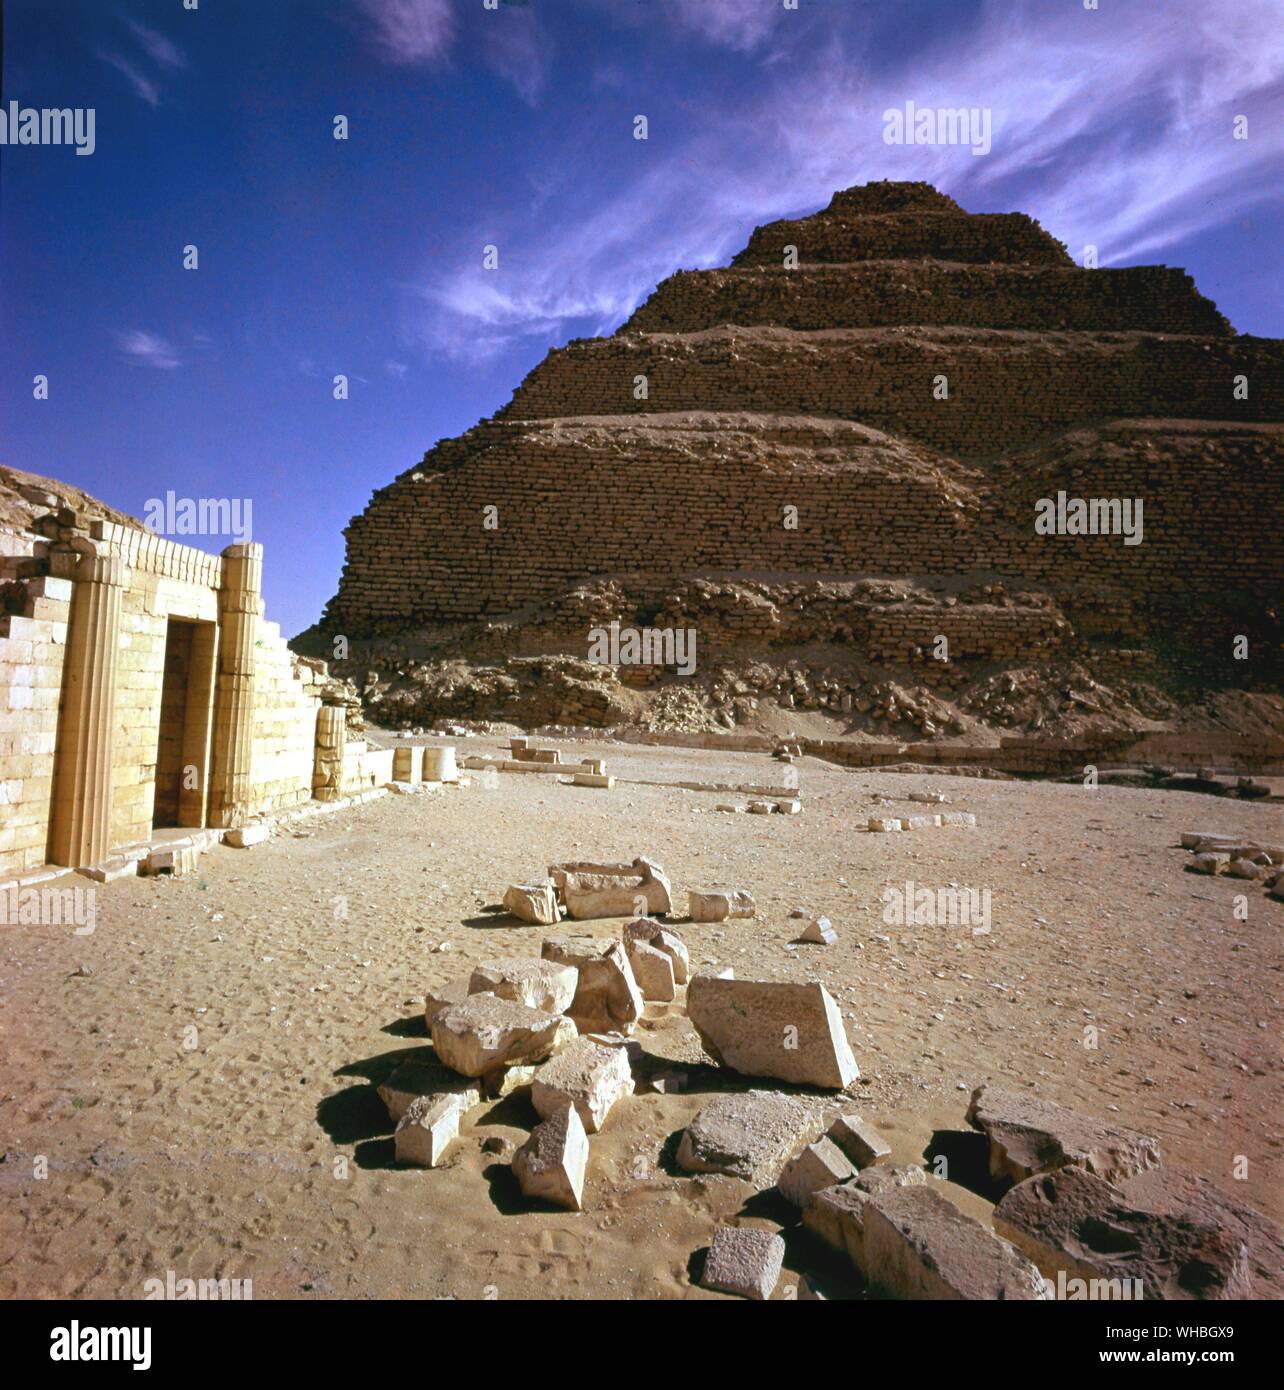 Sakkara - Schritt Pyramide - Sakkara, Sakkara, Saqqarah ist ein riesiges, alte Grabstätte in Ägypten, mit Ältesten, schritt der Welt Pyramide (29.871264° N 31.216381° E). Es liegt etwa 30 km südlich des heutigen Kairo und umfasst eine Fläche von rund 7 km bis 1,5 km. Stockfoto